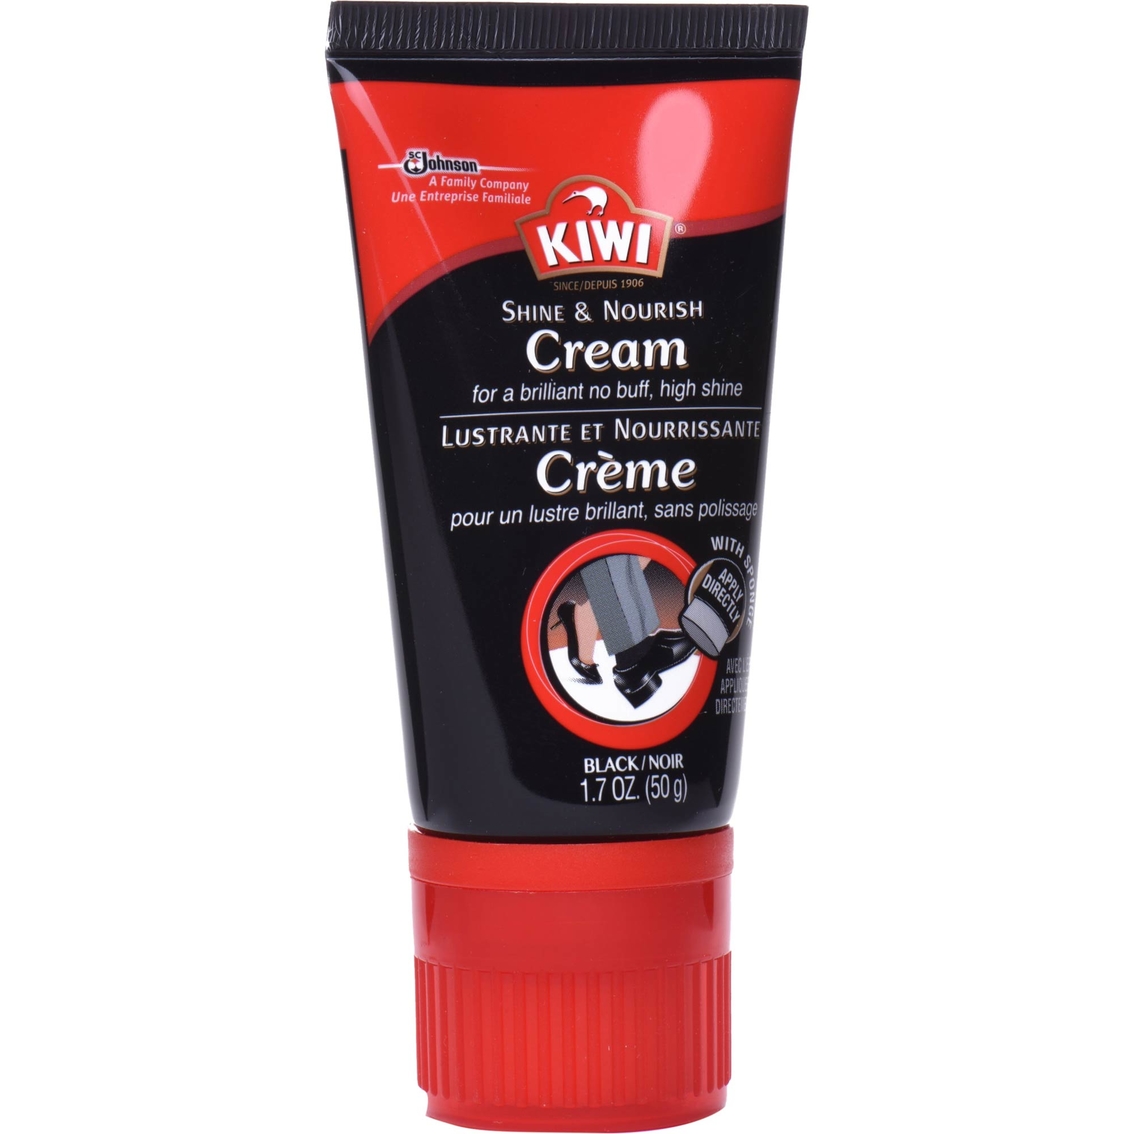 Kiwi Shine and Nourish Cream